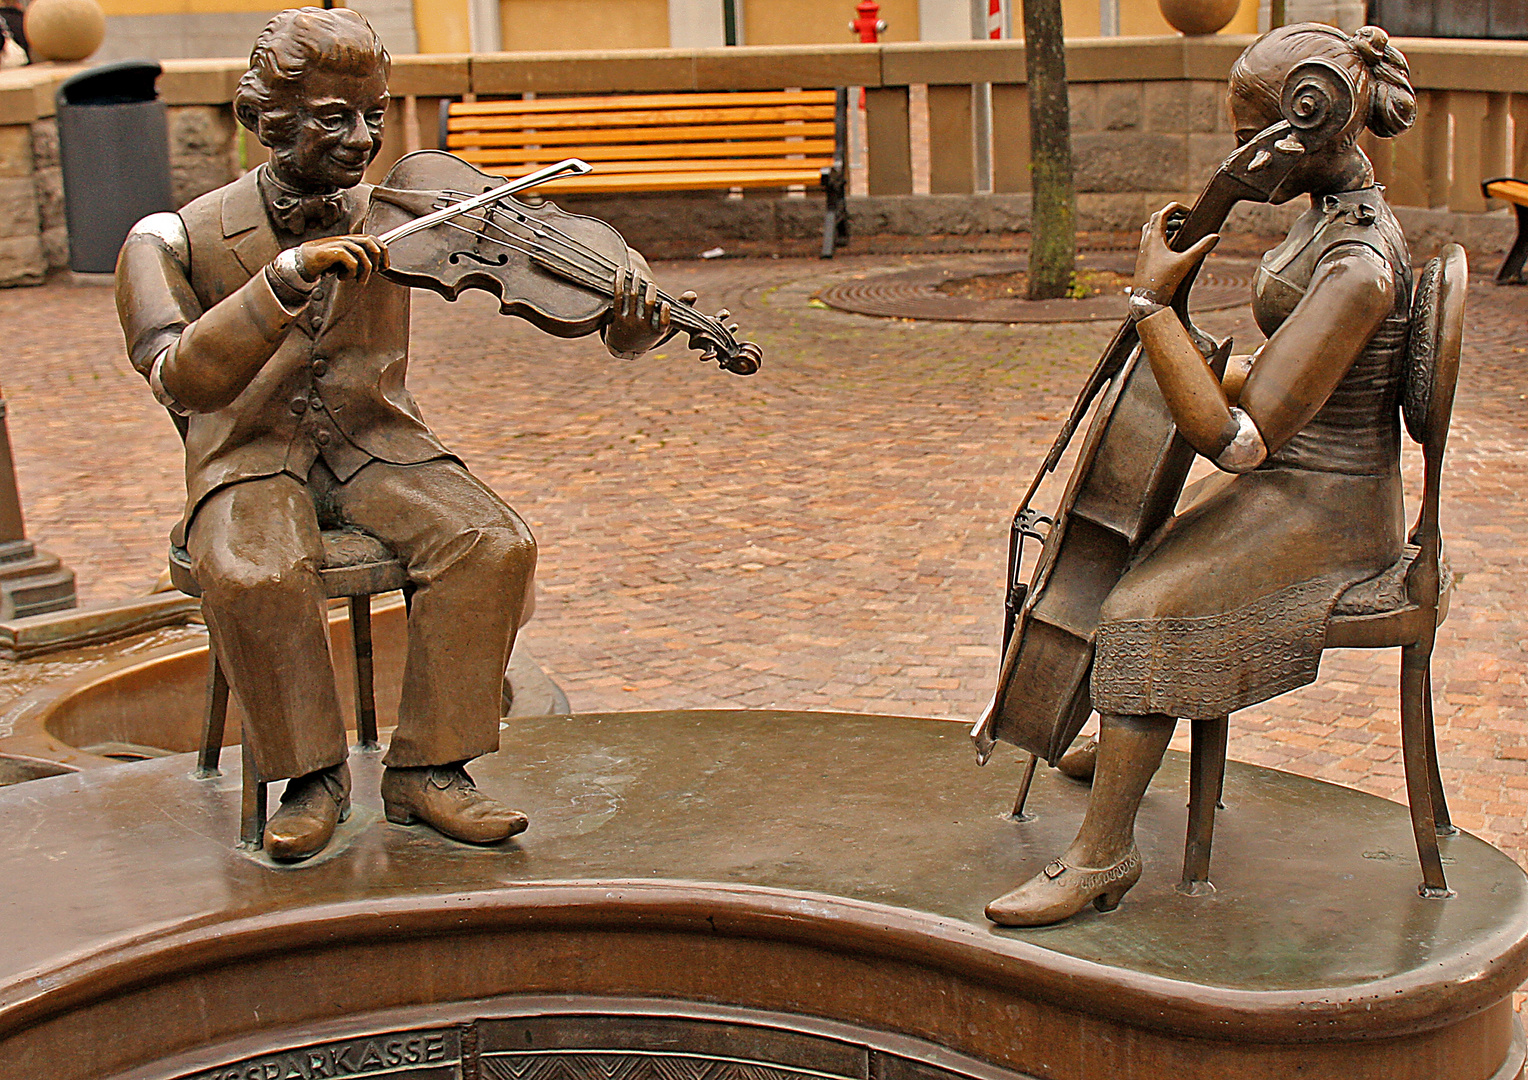 Musikanten am Brunnen